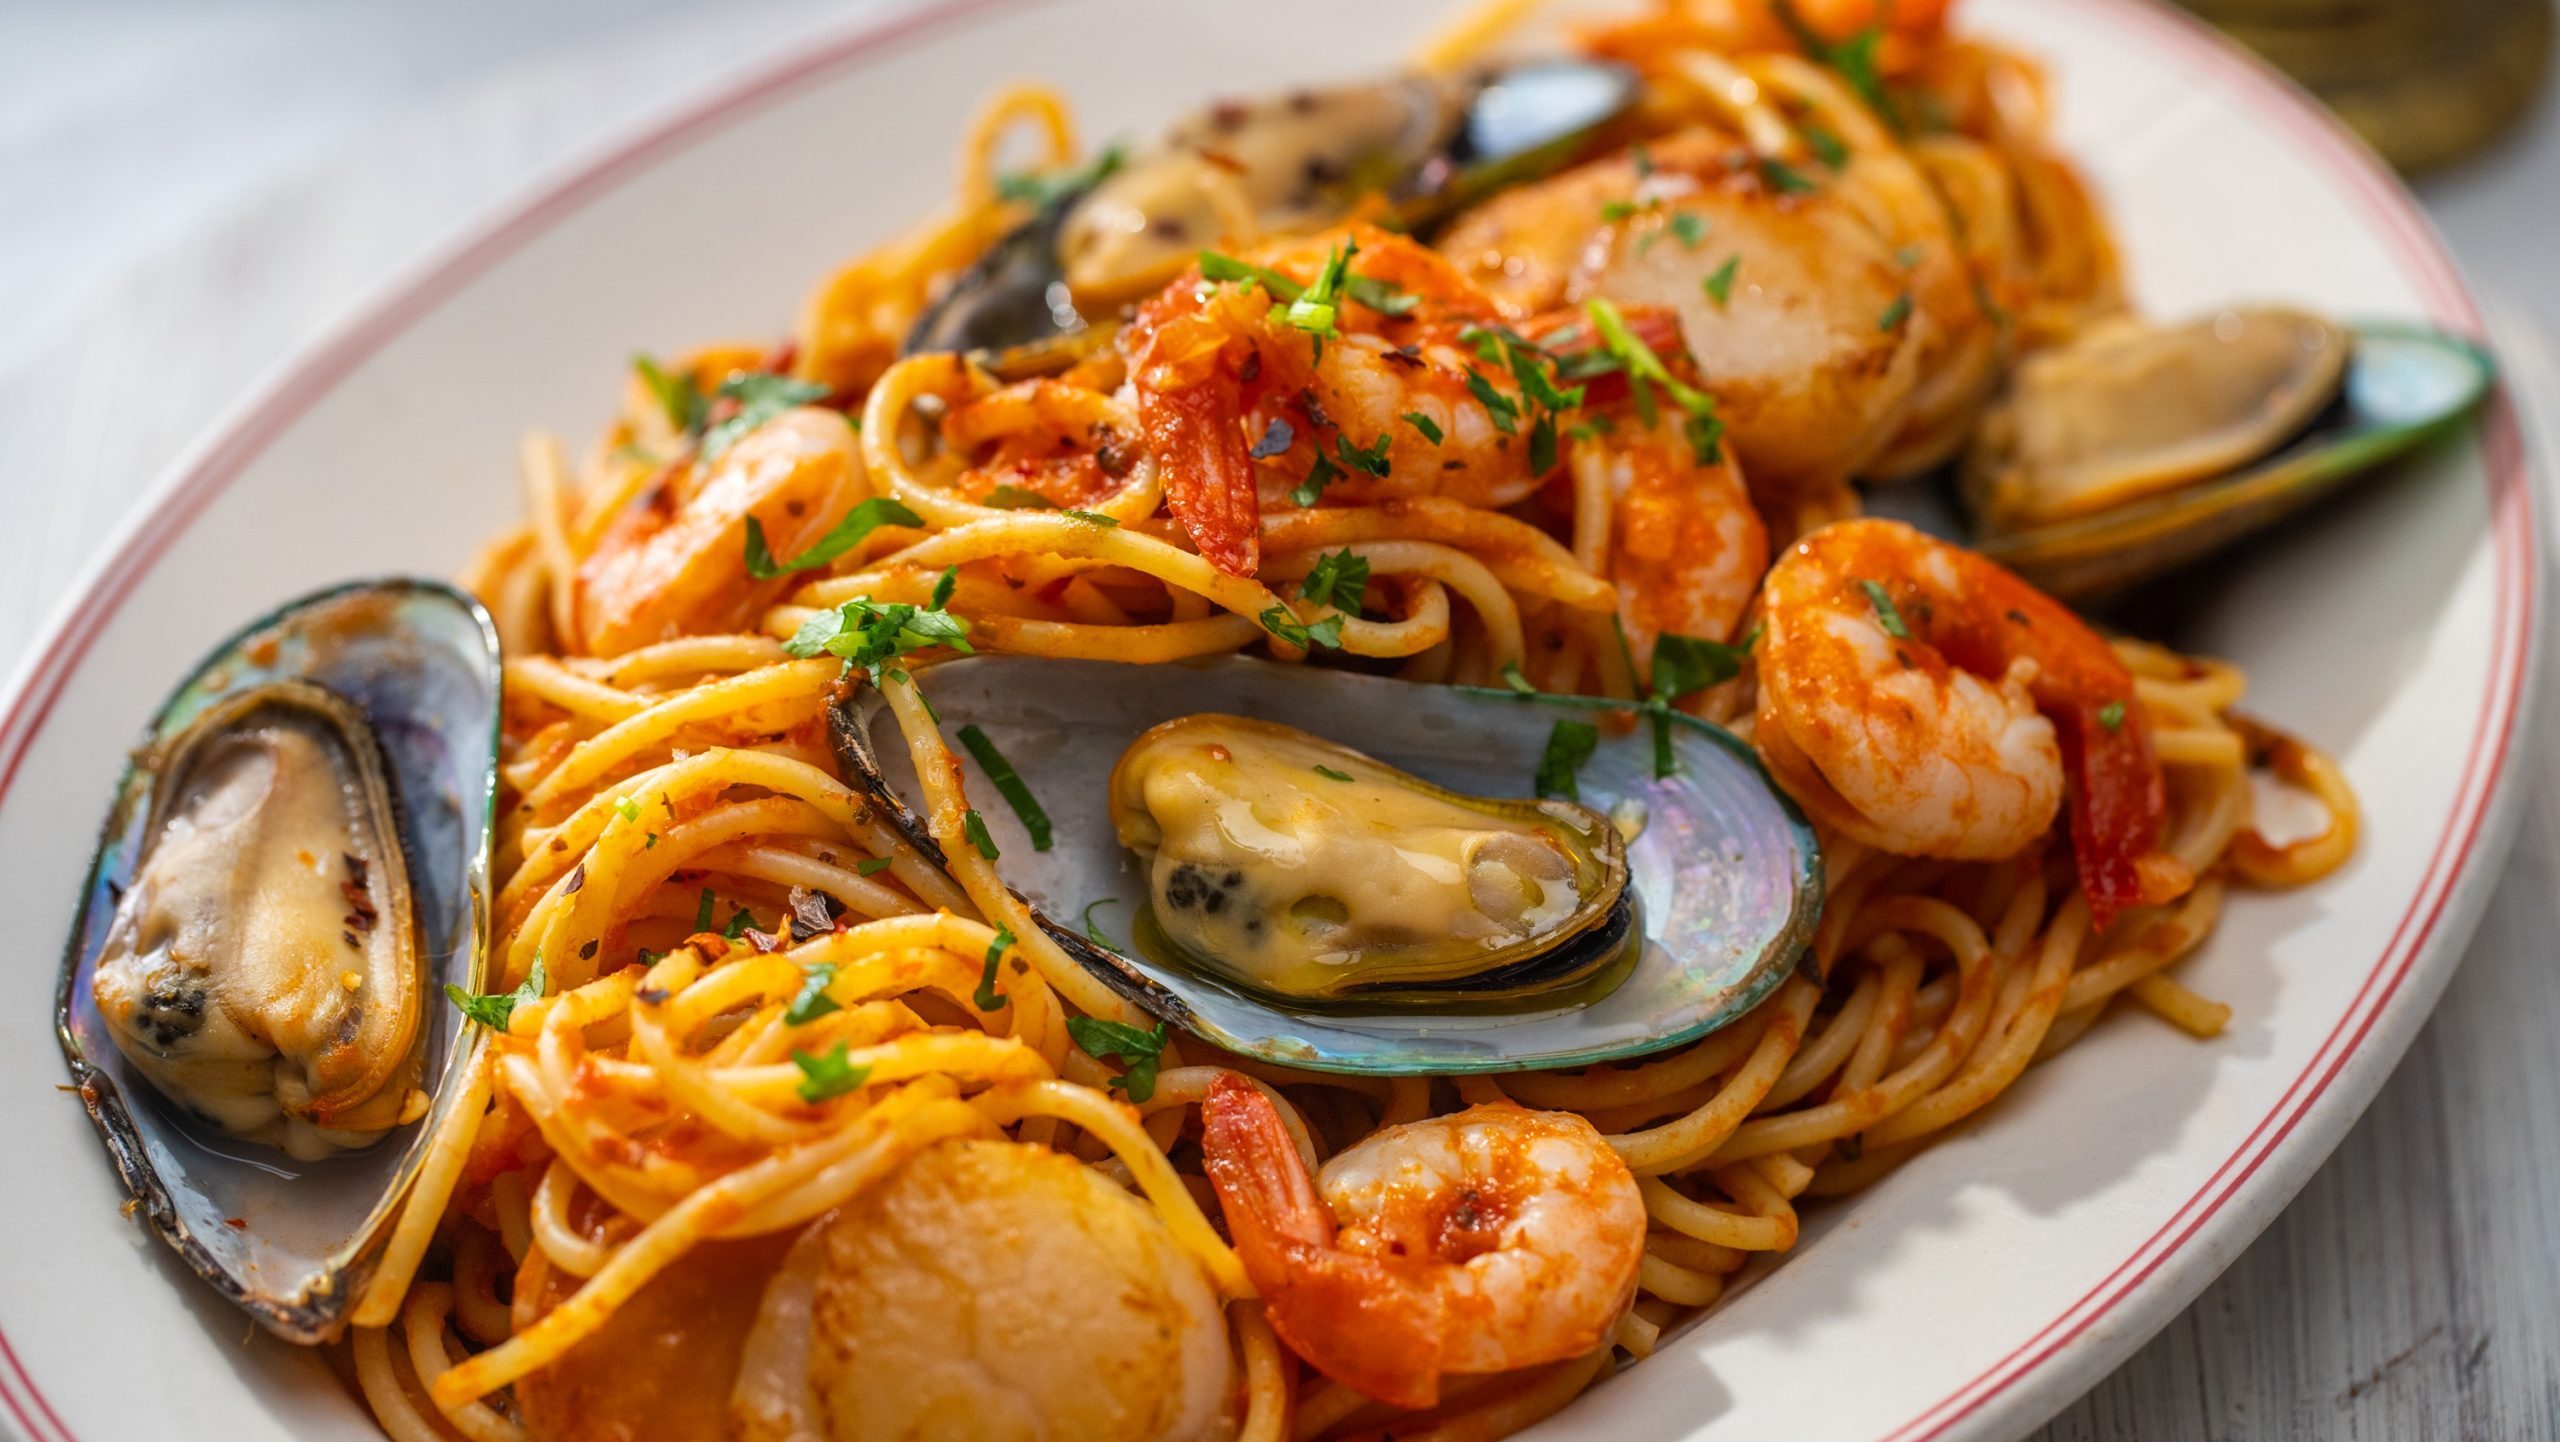 A plate of seafood spaghetti marinara sauce.